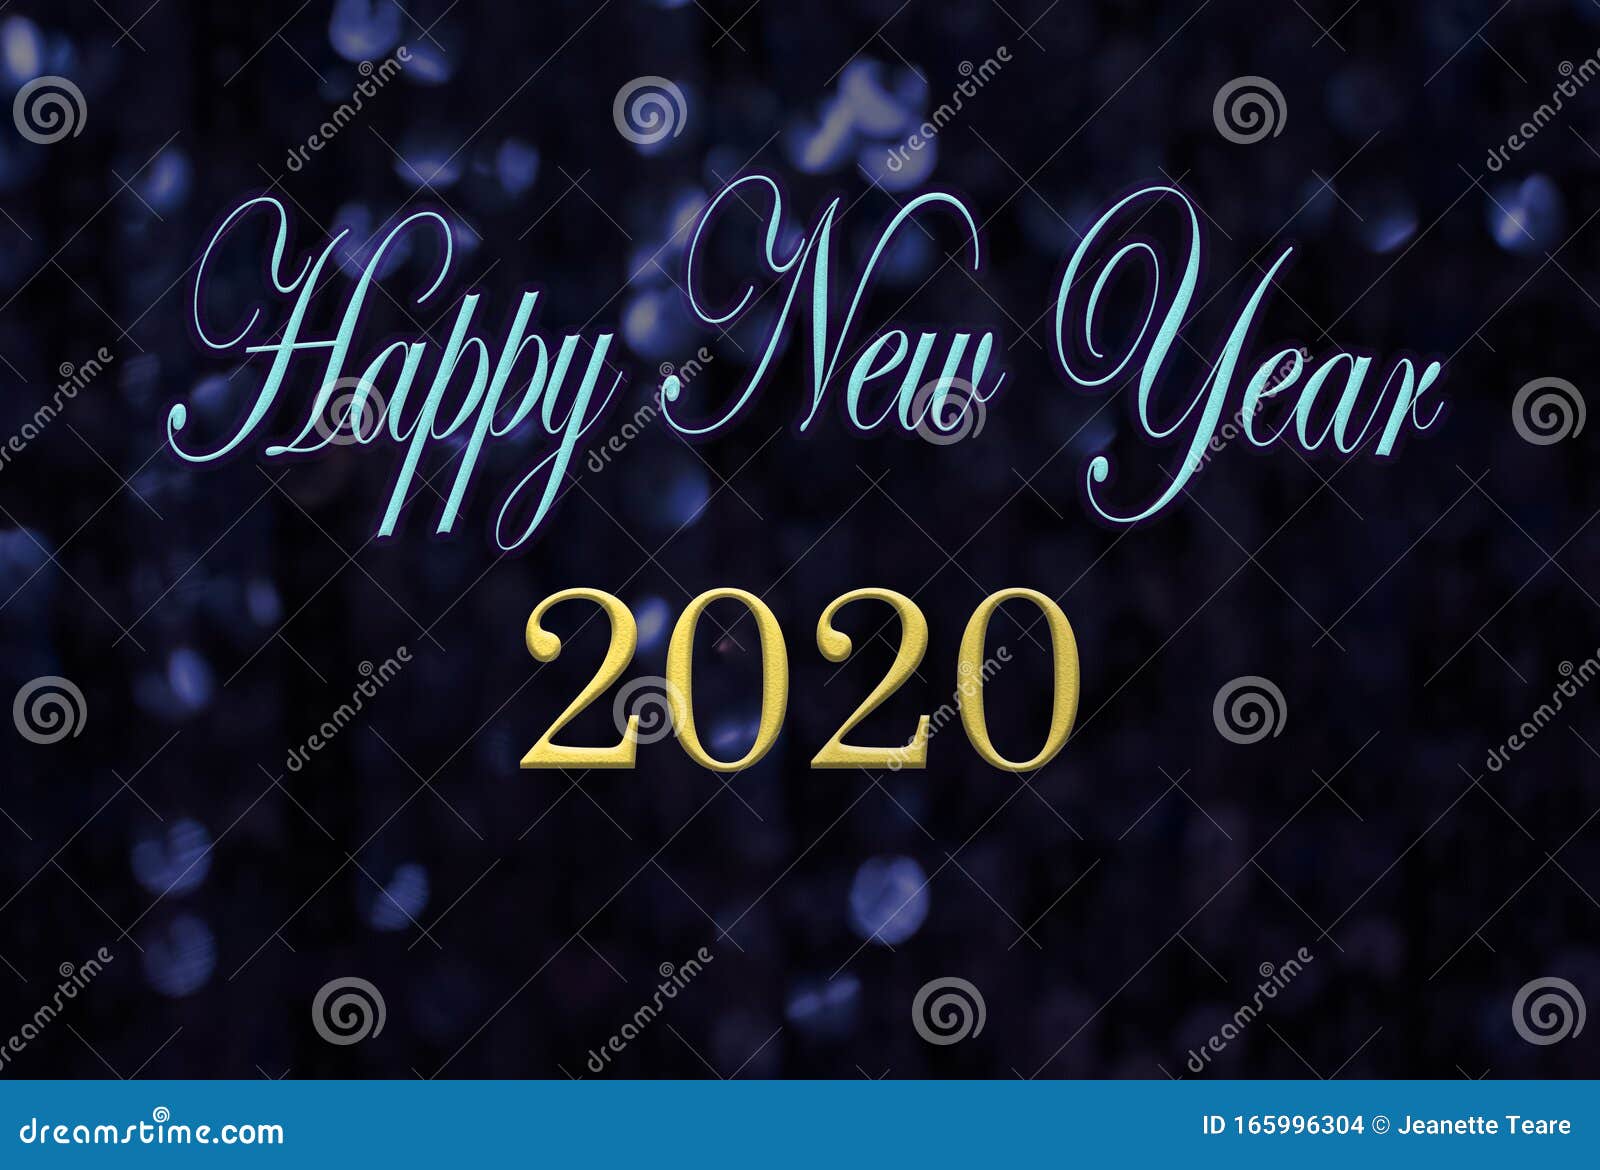 Szczęśliwego nowego roku 2020 - wiadomość o iskrzącym tle. Szczęśliwego nowego roku 2020 wiadomość na błyszczącym tle, elegancki skrypt ze złotymi literami